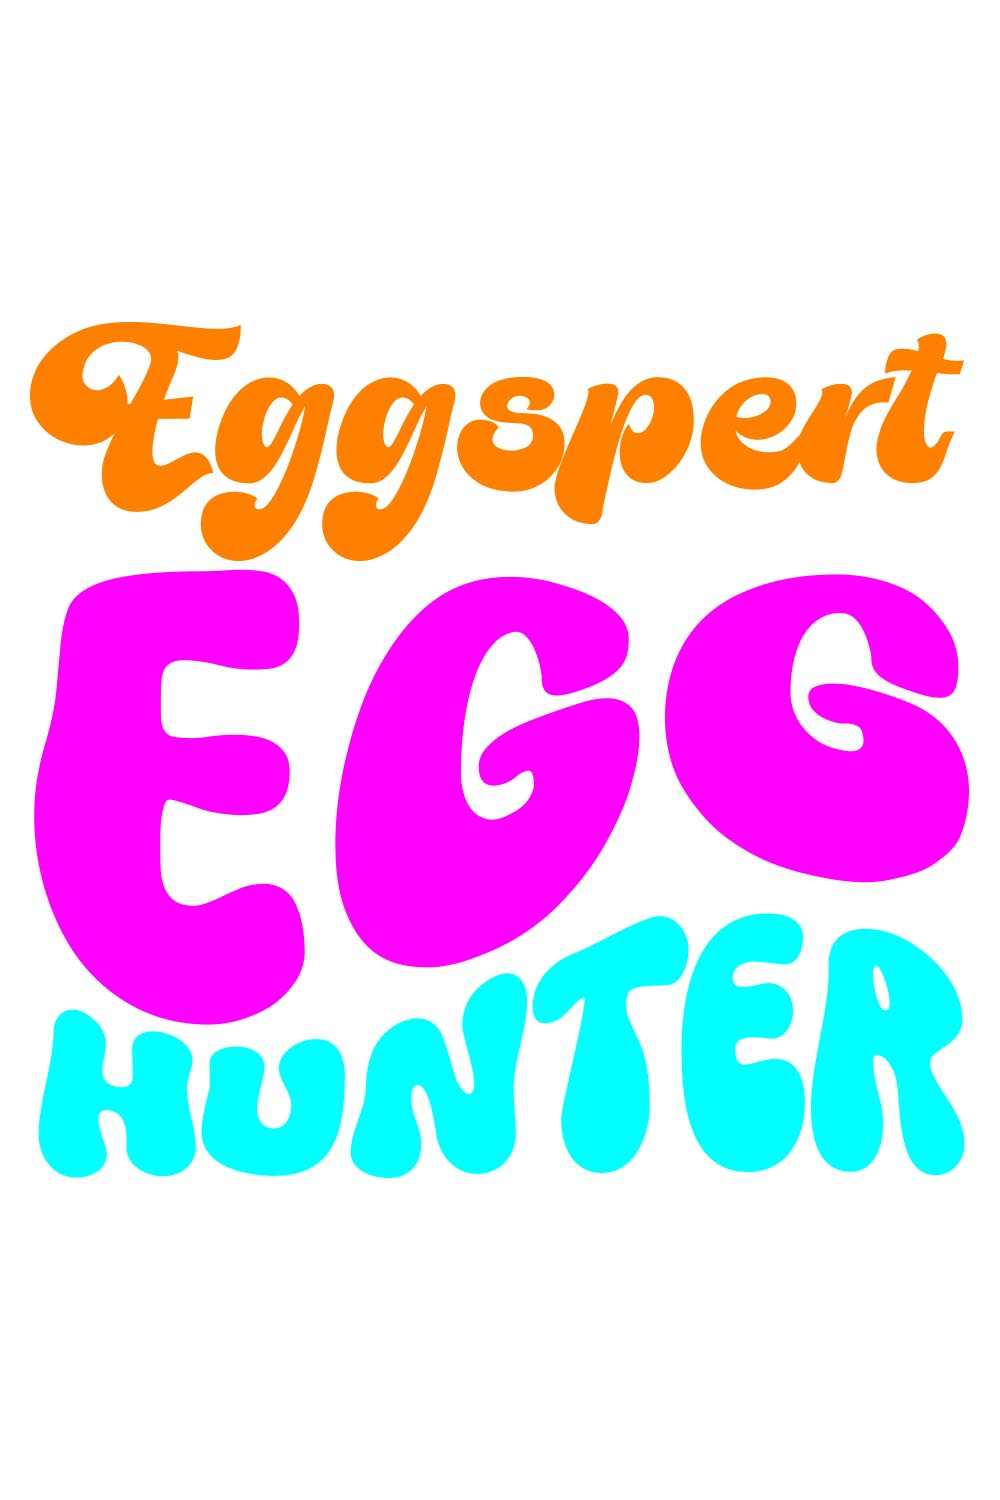 Eggspert Egg Hunter Retro T-Shirt Designs pinterest preview image.